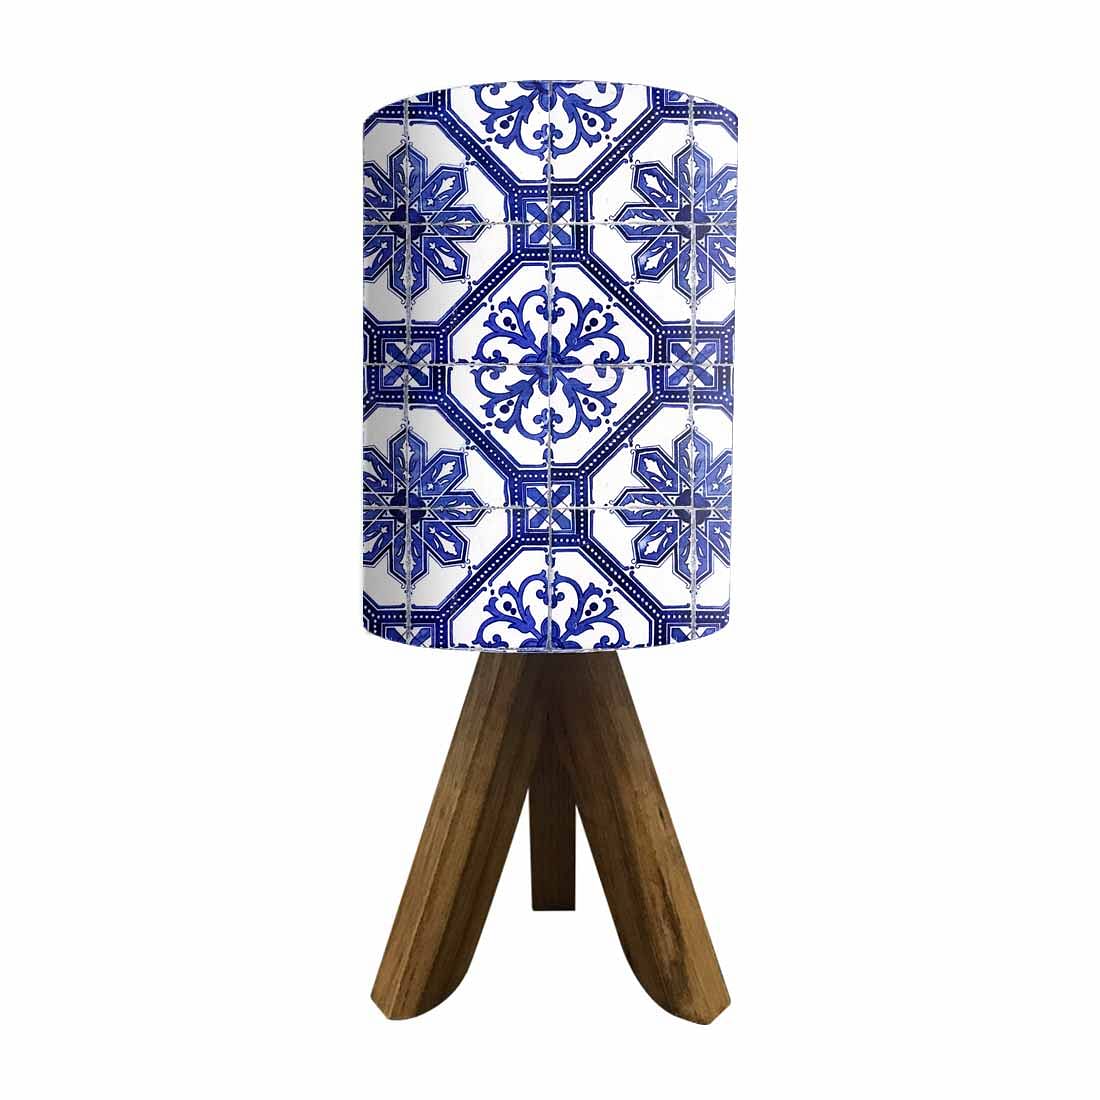 Wooden Reading Lamp For Bedroom - Blue Flower Tiles Nutcase